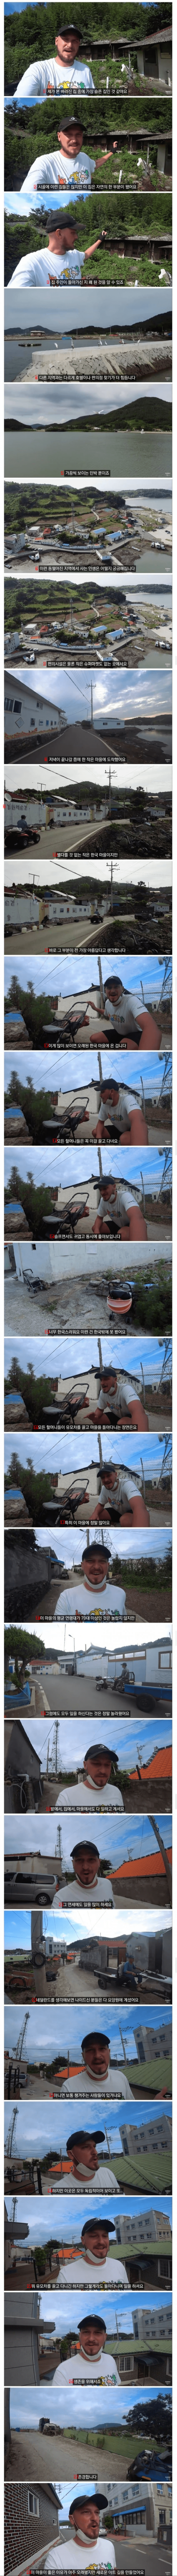 한국 시골을 여행하는 해외 유튜버